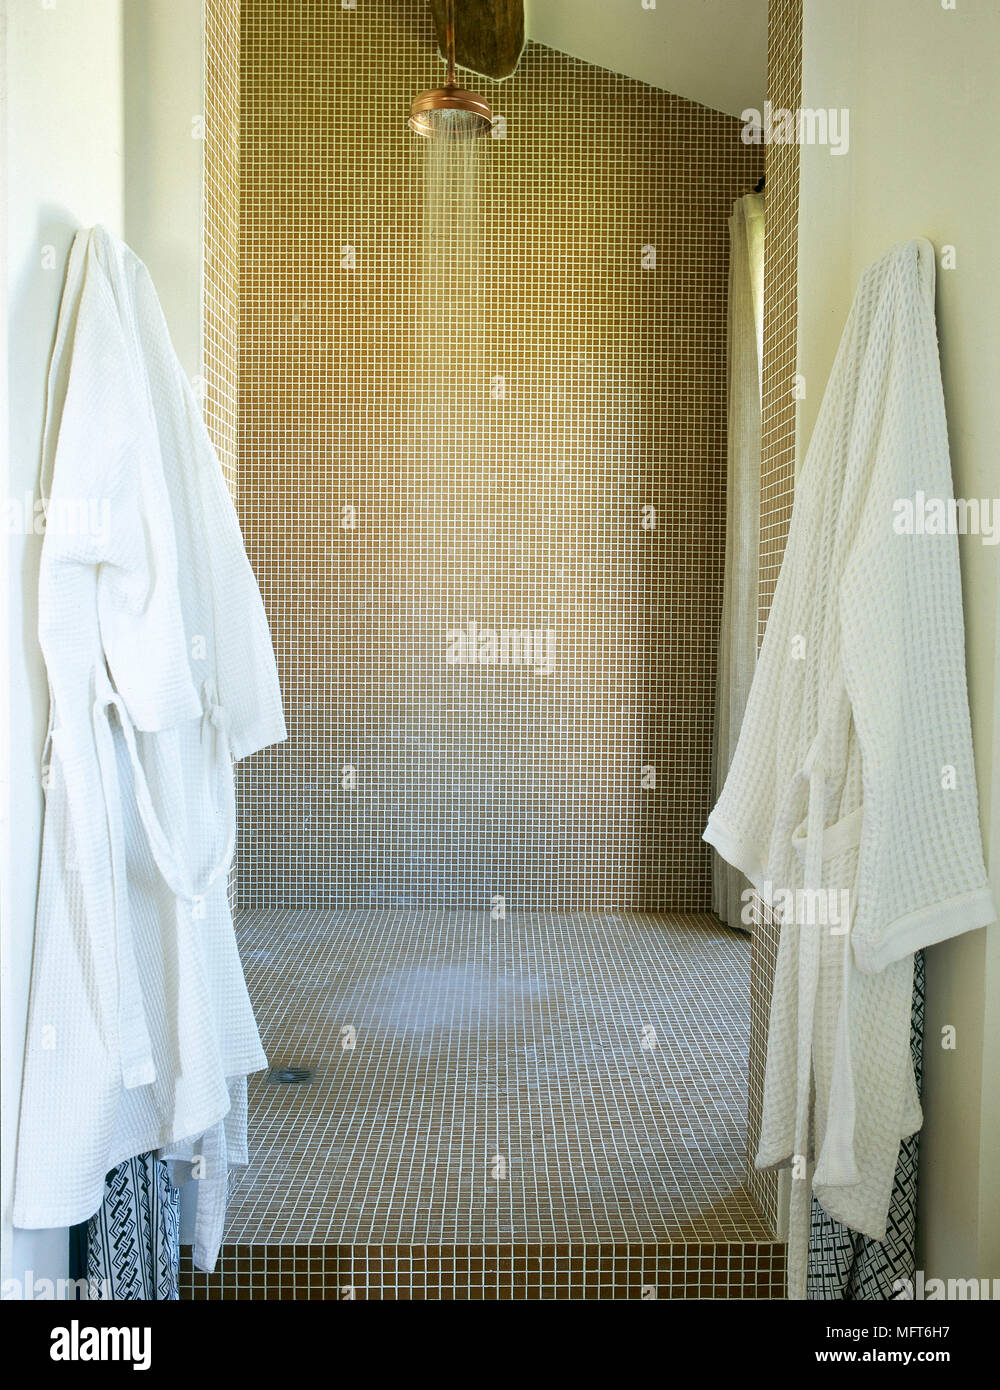 Modernes Badezimmer Detail einer Dusche mit fließendem Wasser, Mosaikfliesen  und Bademäntel hängen an Haken Stockfotografie - Alamy